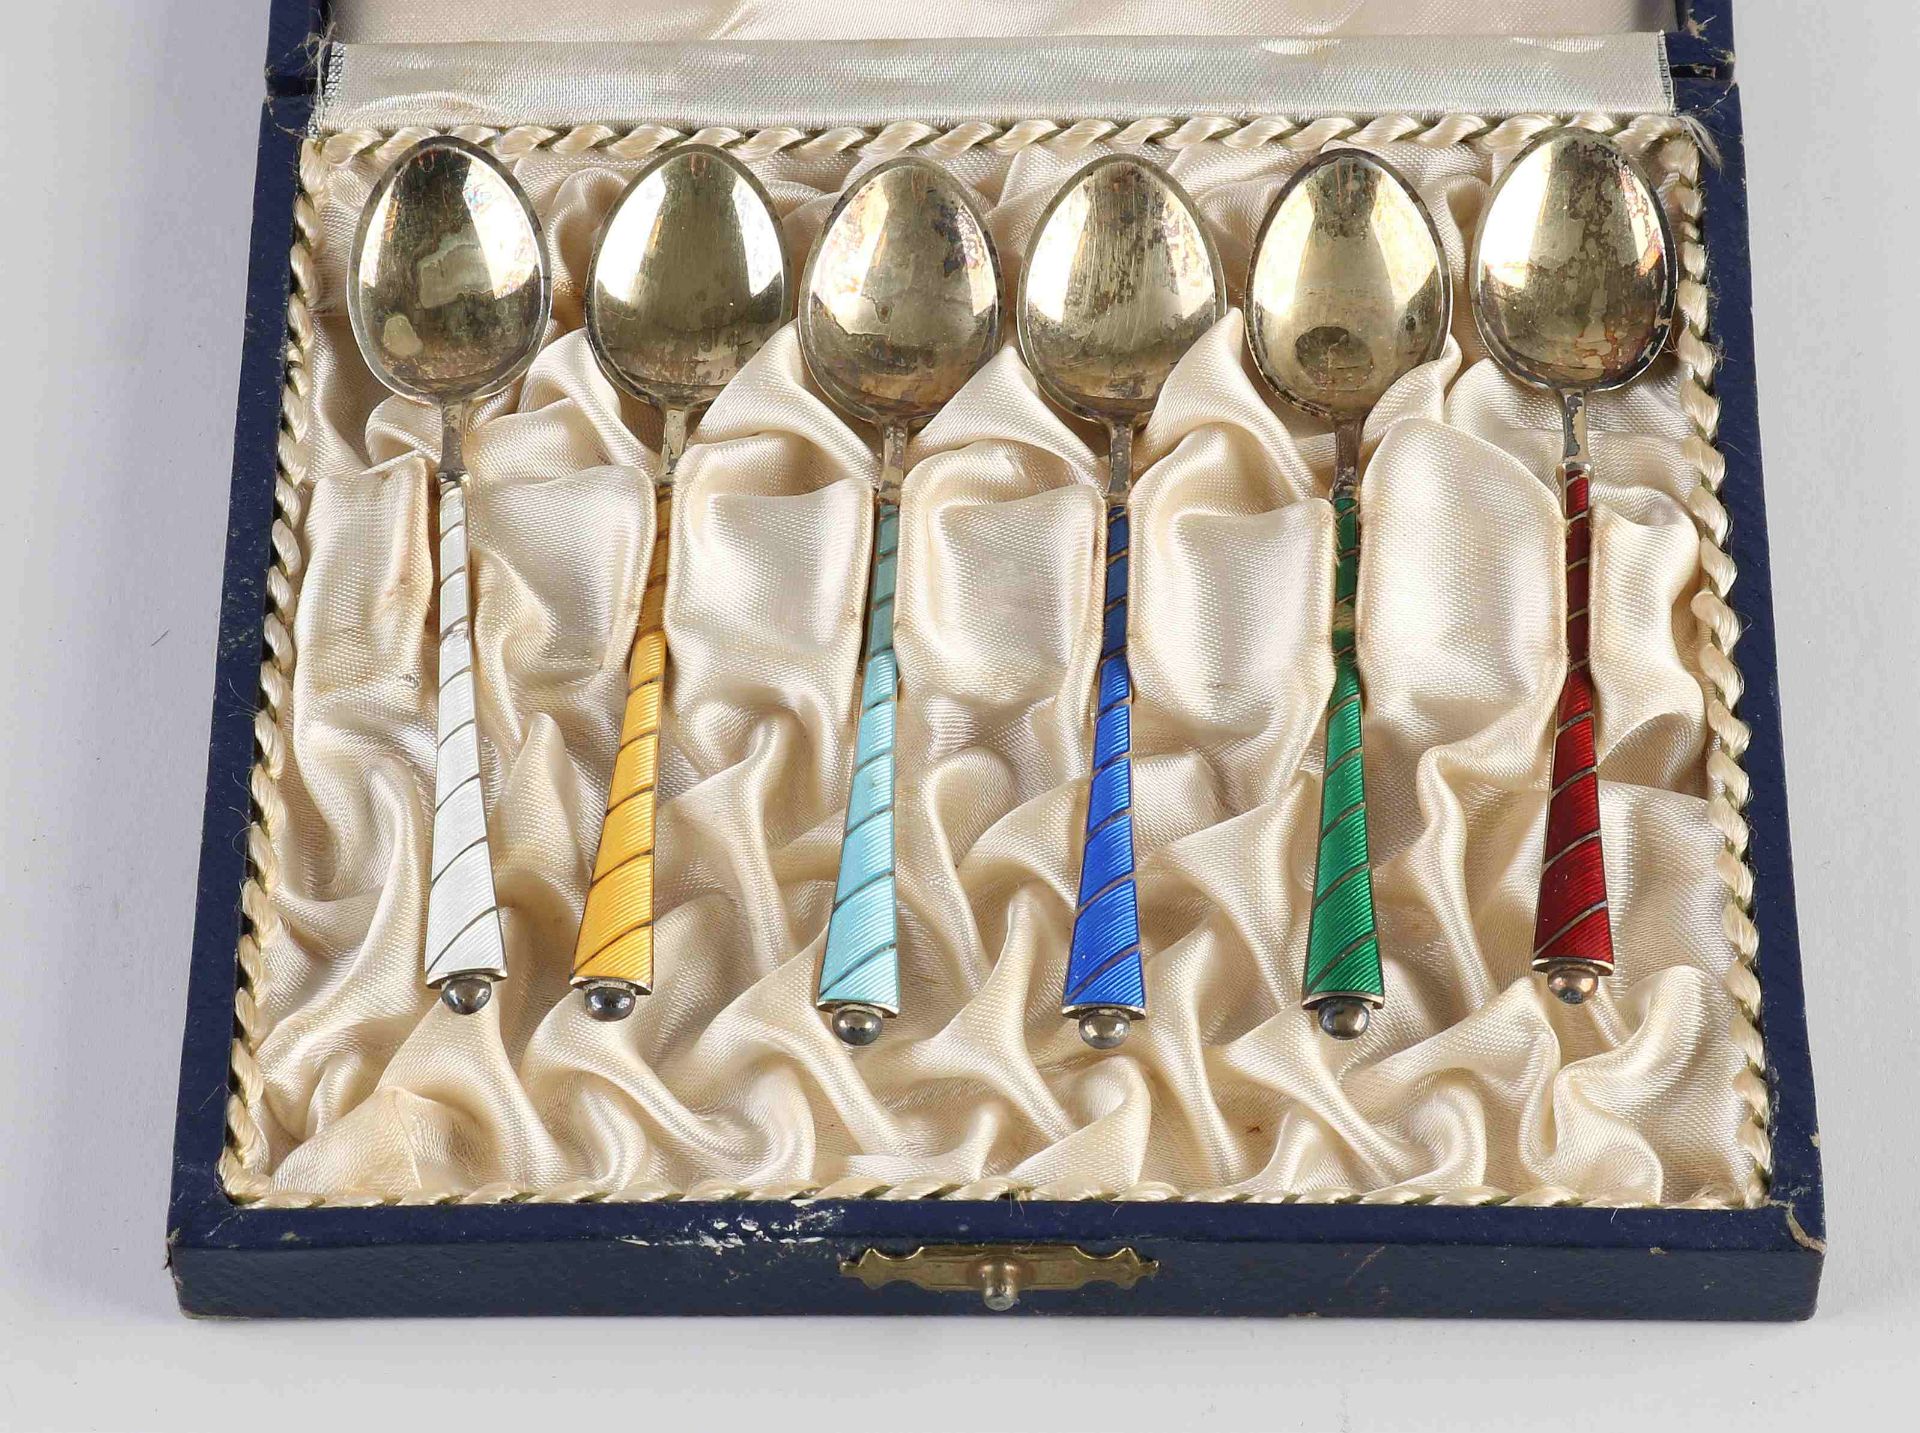 Silver spoons (Denmark)